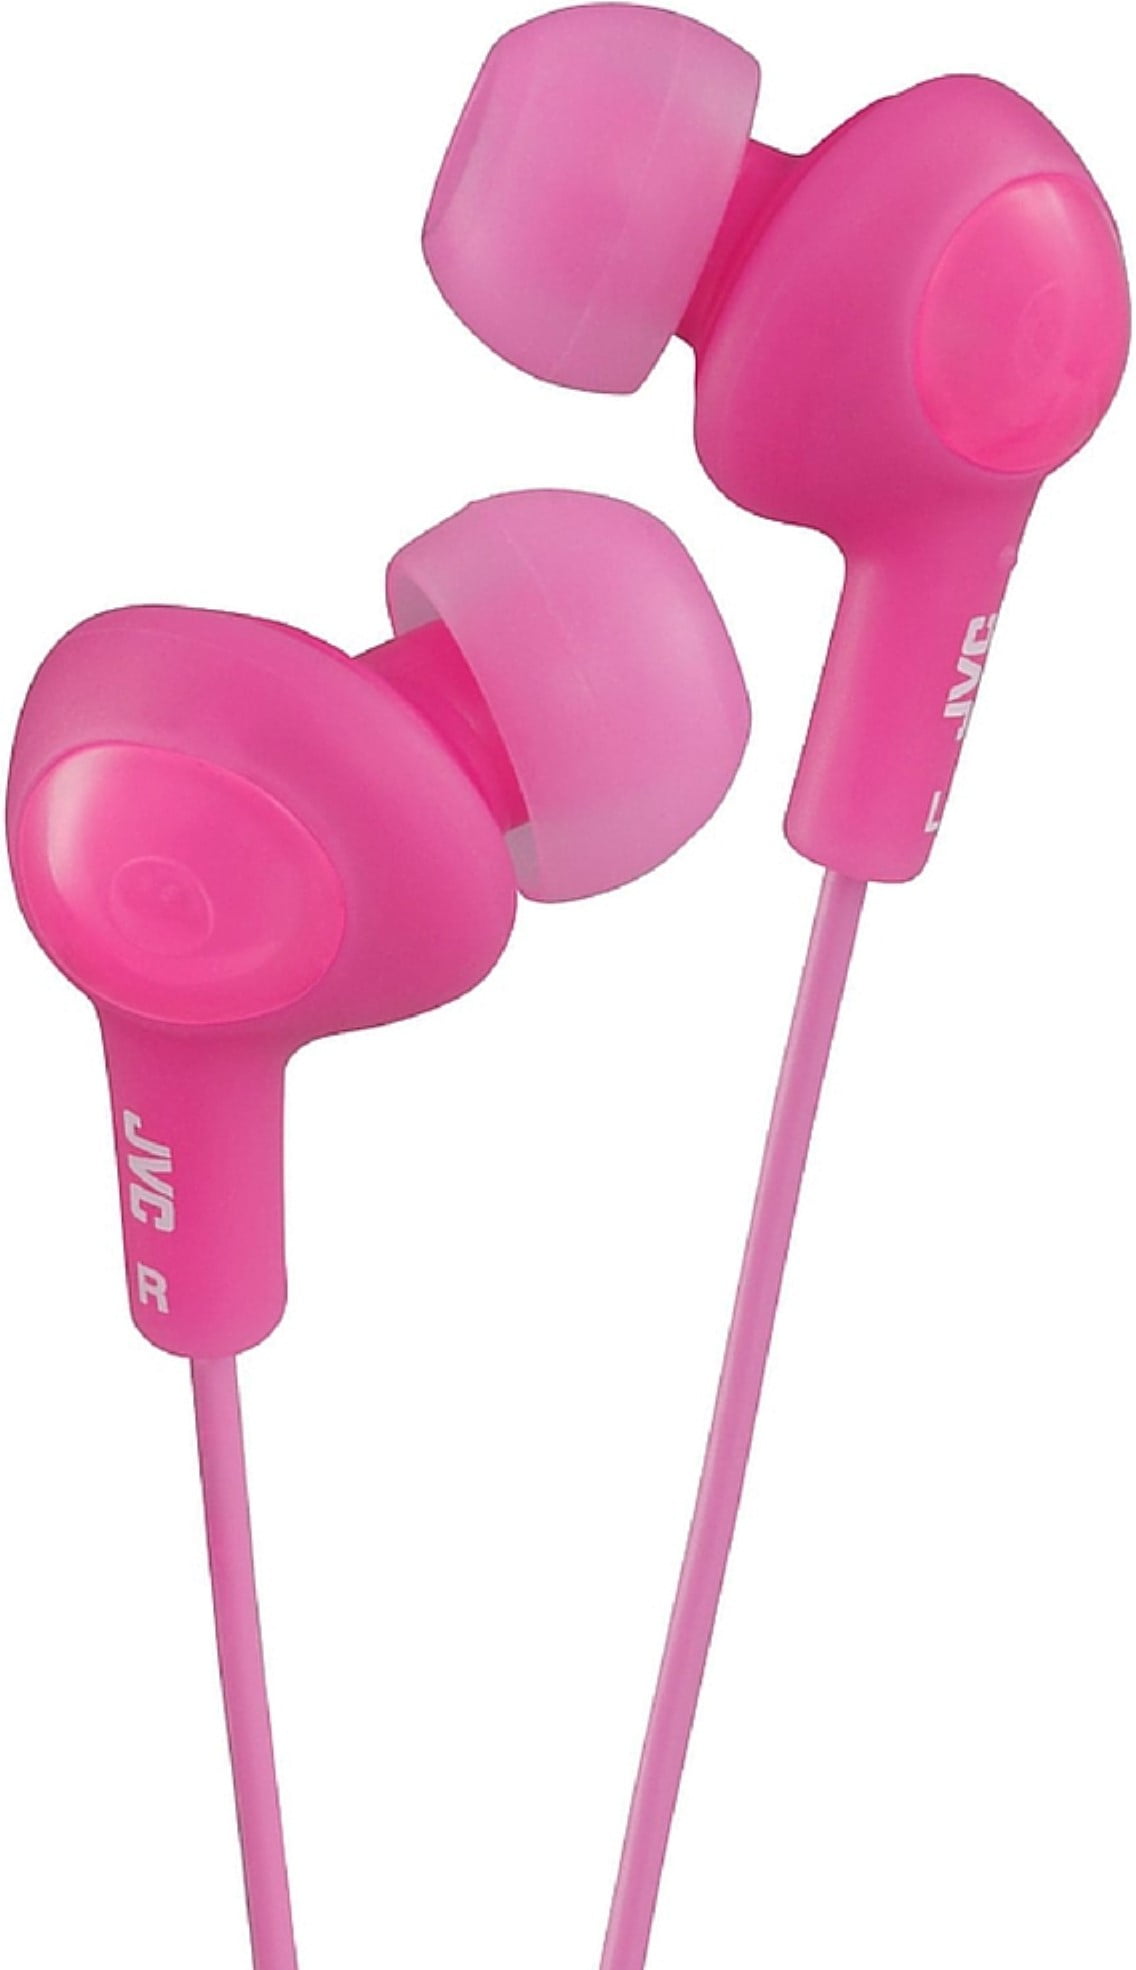 JVC Gumy Plus In-Ear Headphones, Pink 1 ea (Pack of 2) - Walmart.com